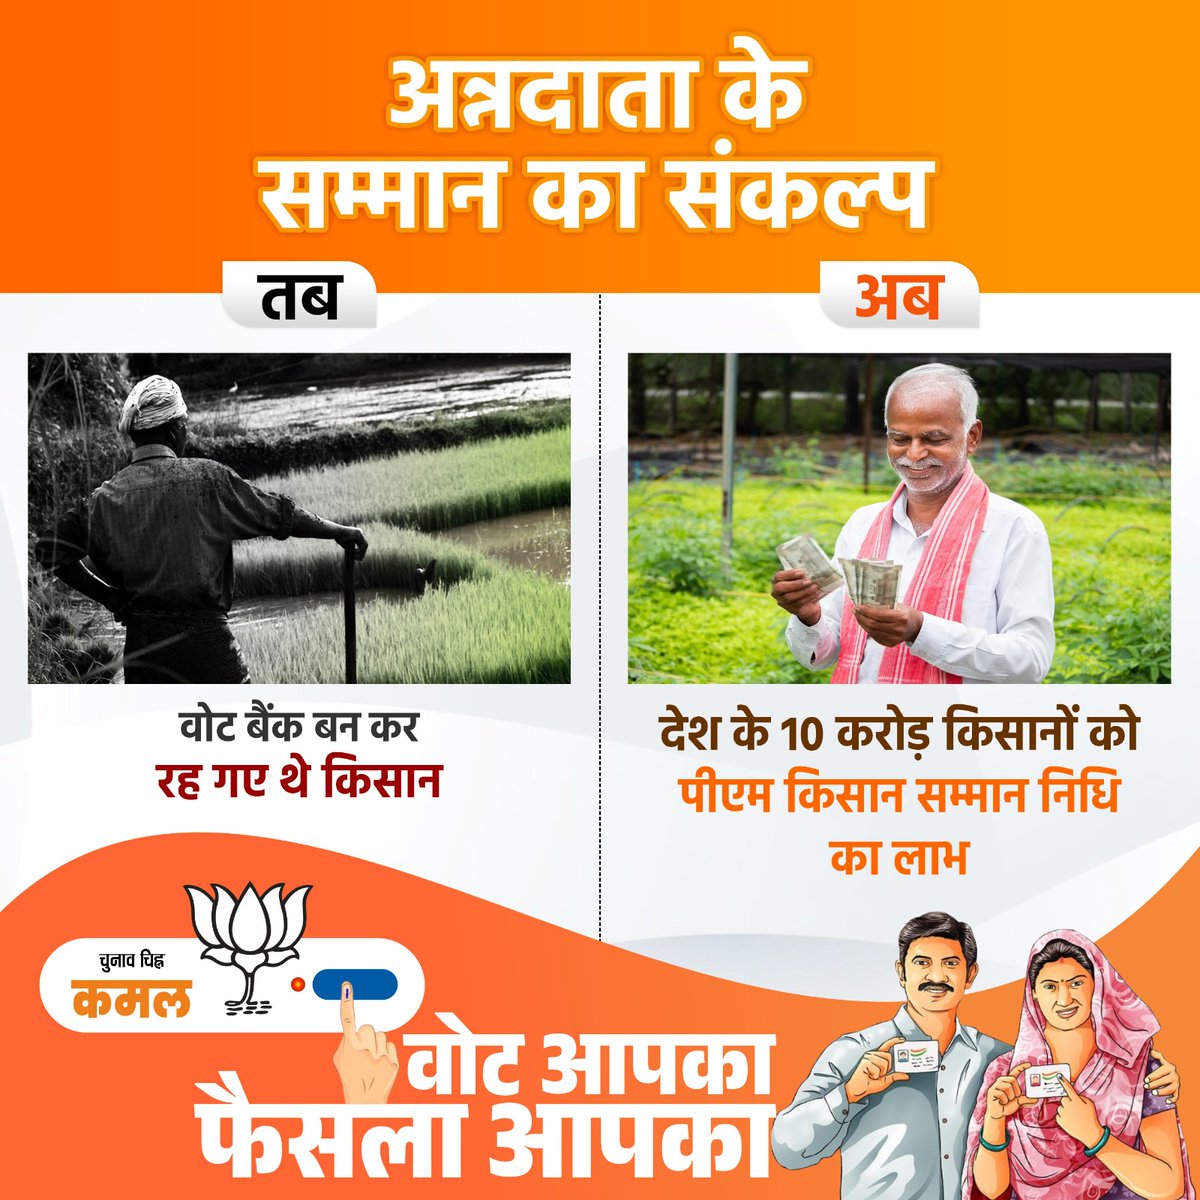 आपके एक वोट की ताकत देश के 10 करोड़ किसानों को पीएम किसान सम्मान निधि का लाभ #Vote4ModiJi #MeraVoteModiKo #AbkiBaar400Paar